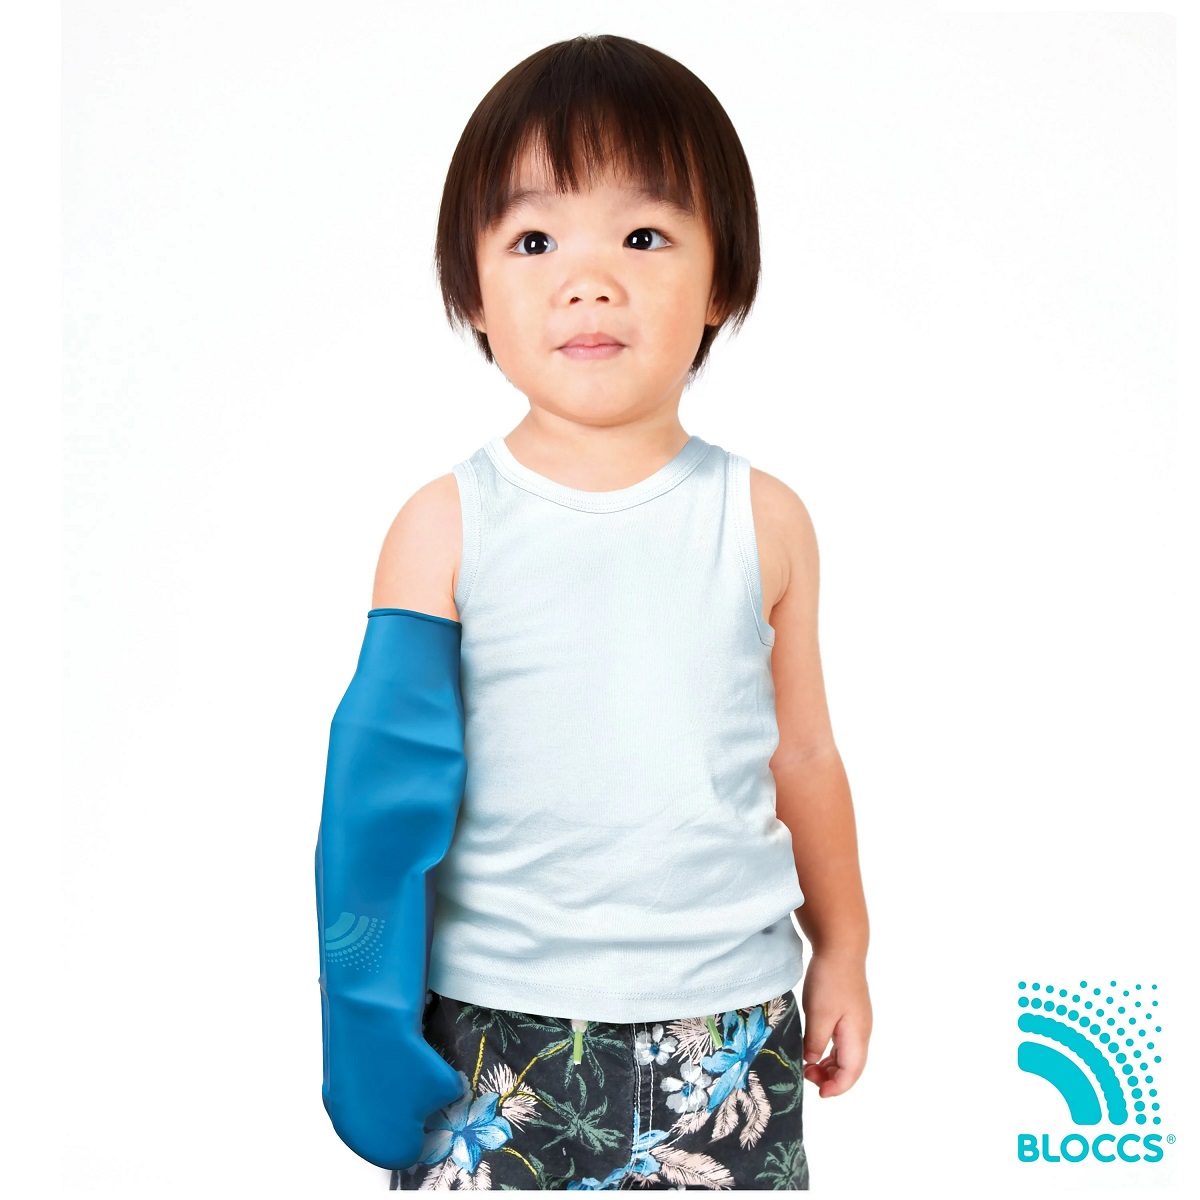 Protectie Bloccs pentru bandaj si ghips pentru mana copil,  marime XS, circumferinta mainii 16-18cm, lungime protectie 33cm